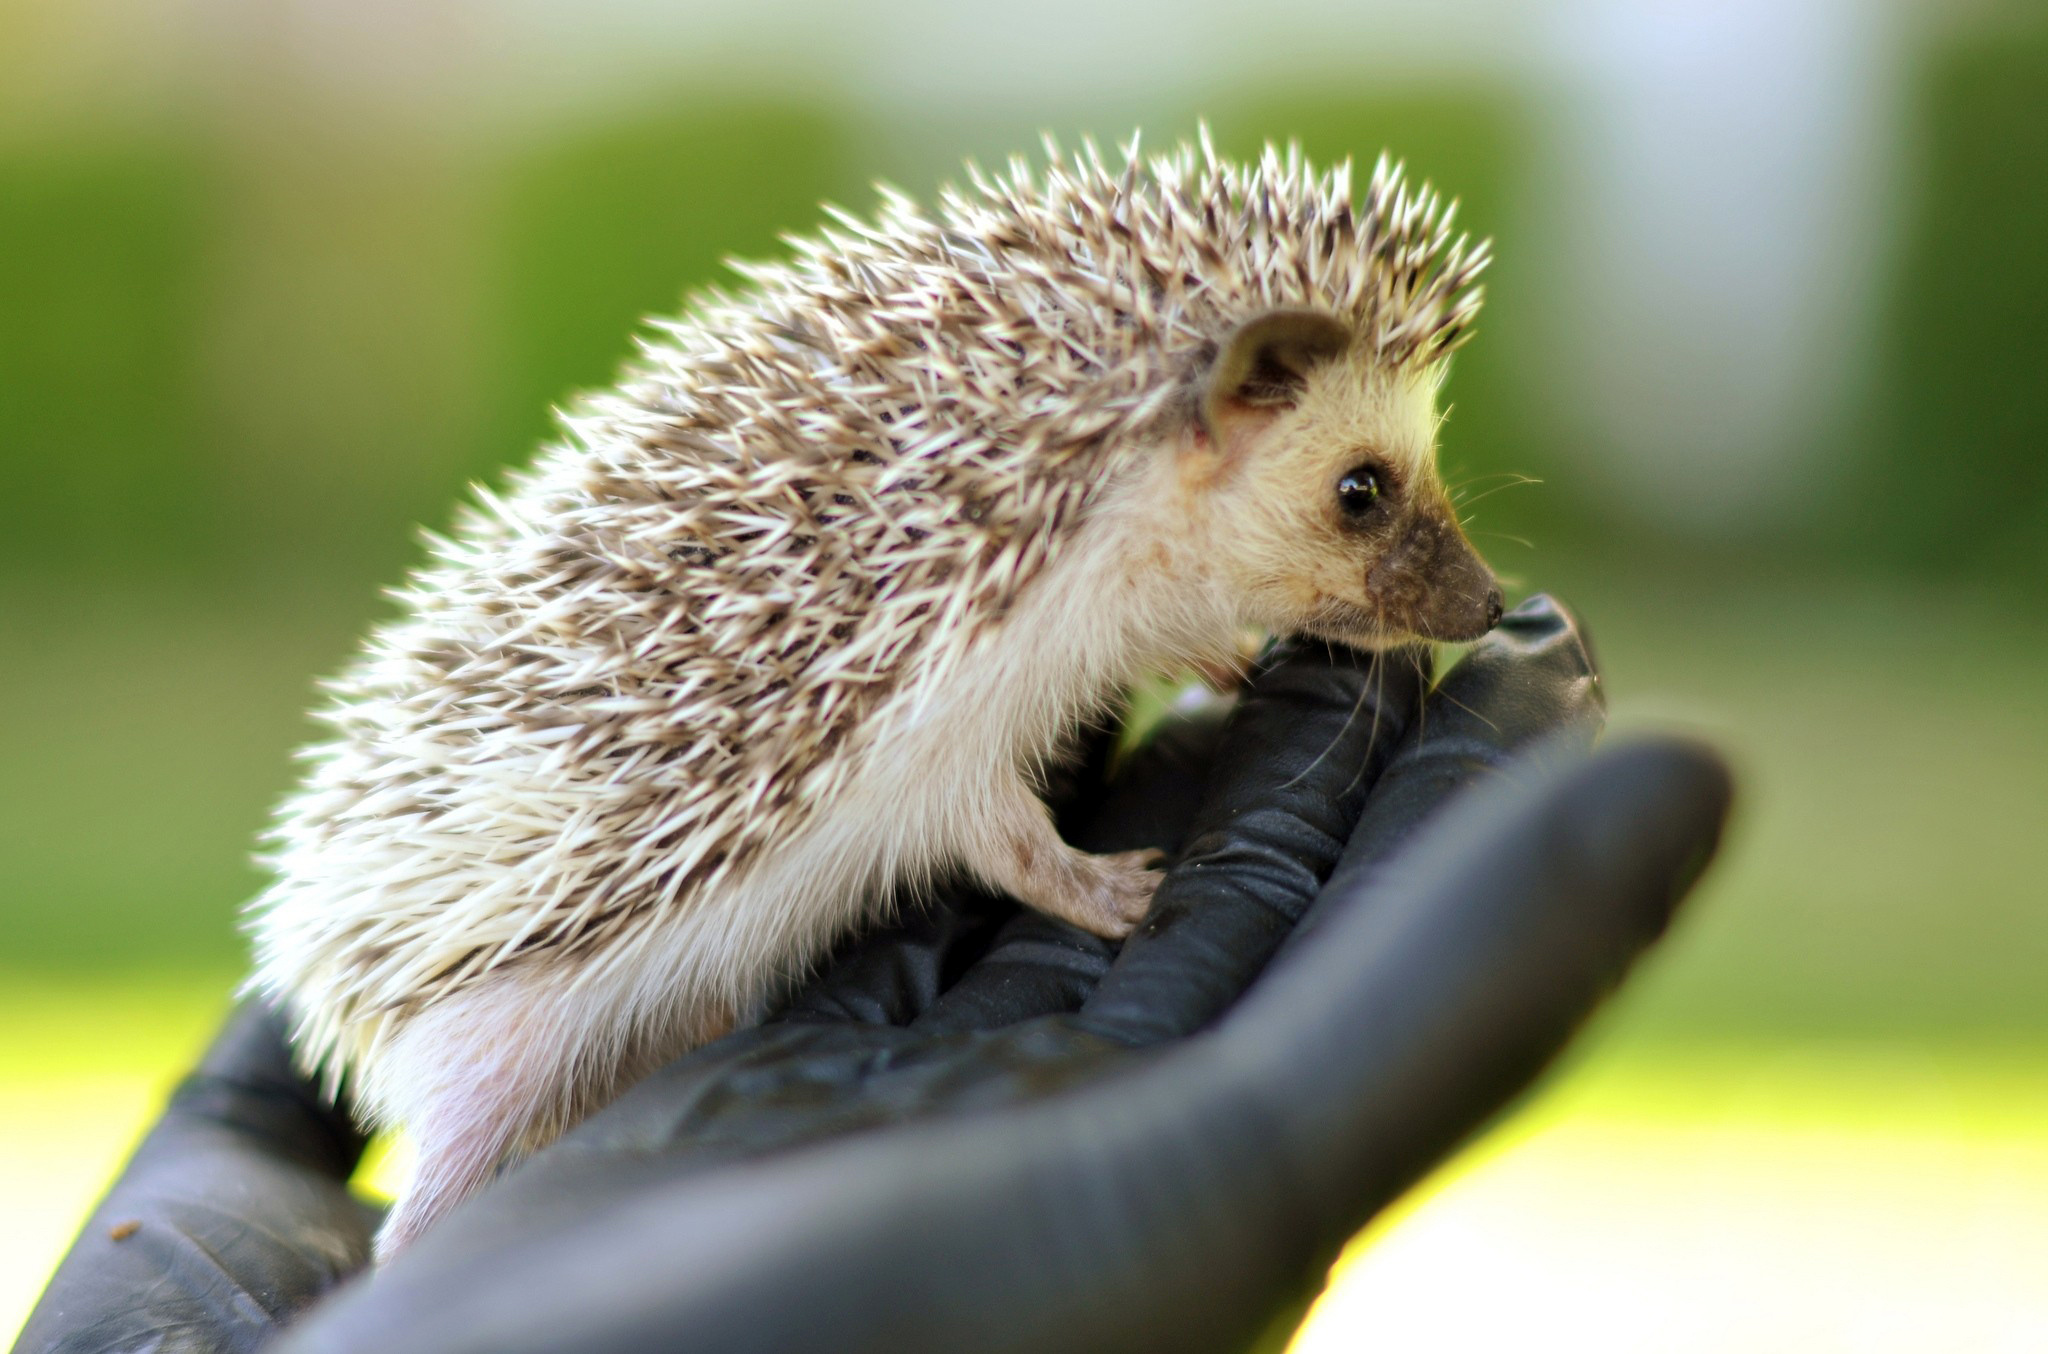 hedgehog wallpaper,erinaceidae,hedgehog,vertebrate,domesticated hedgehog,mammal